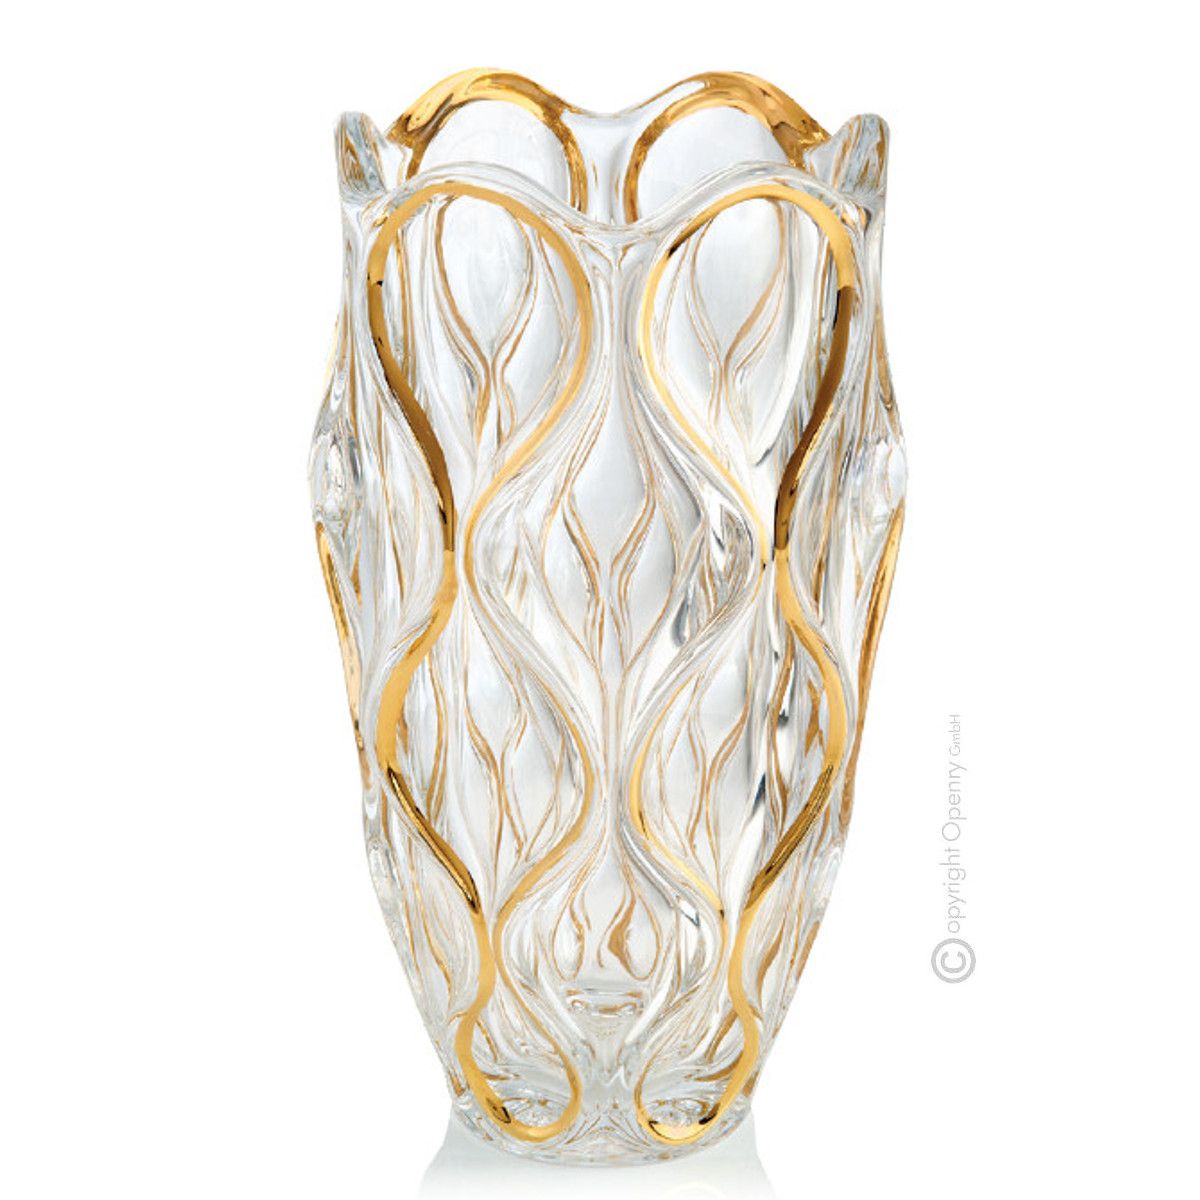 Boteghe - Real Made in Italy – Vaso cristallo Veneziano colore oro 24k